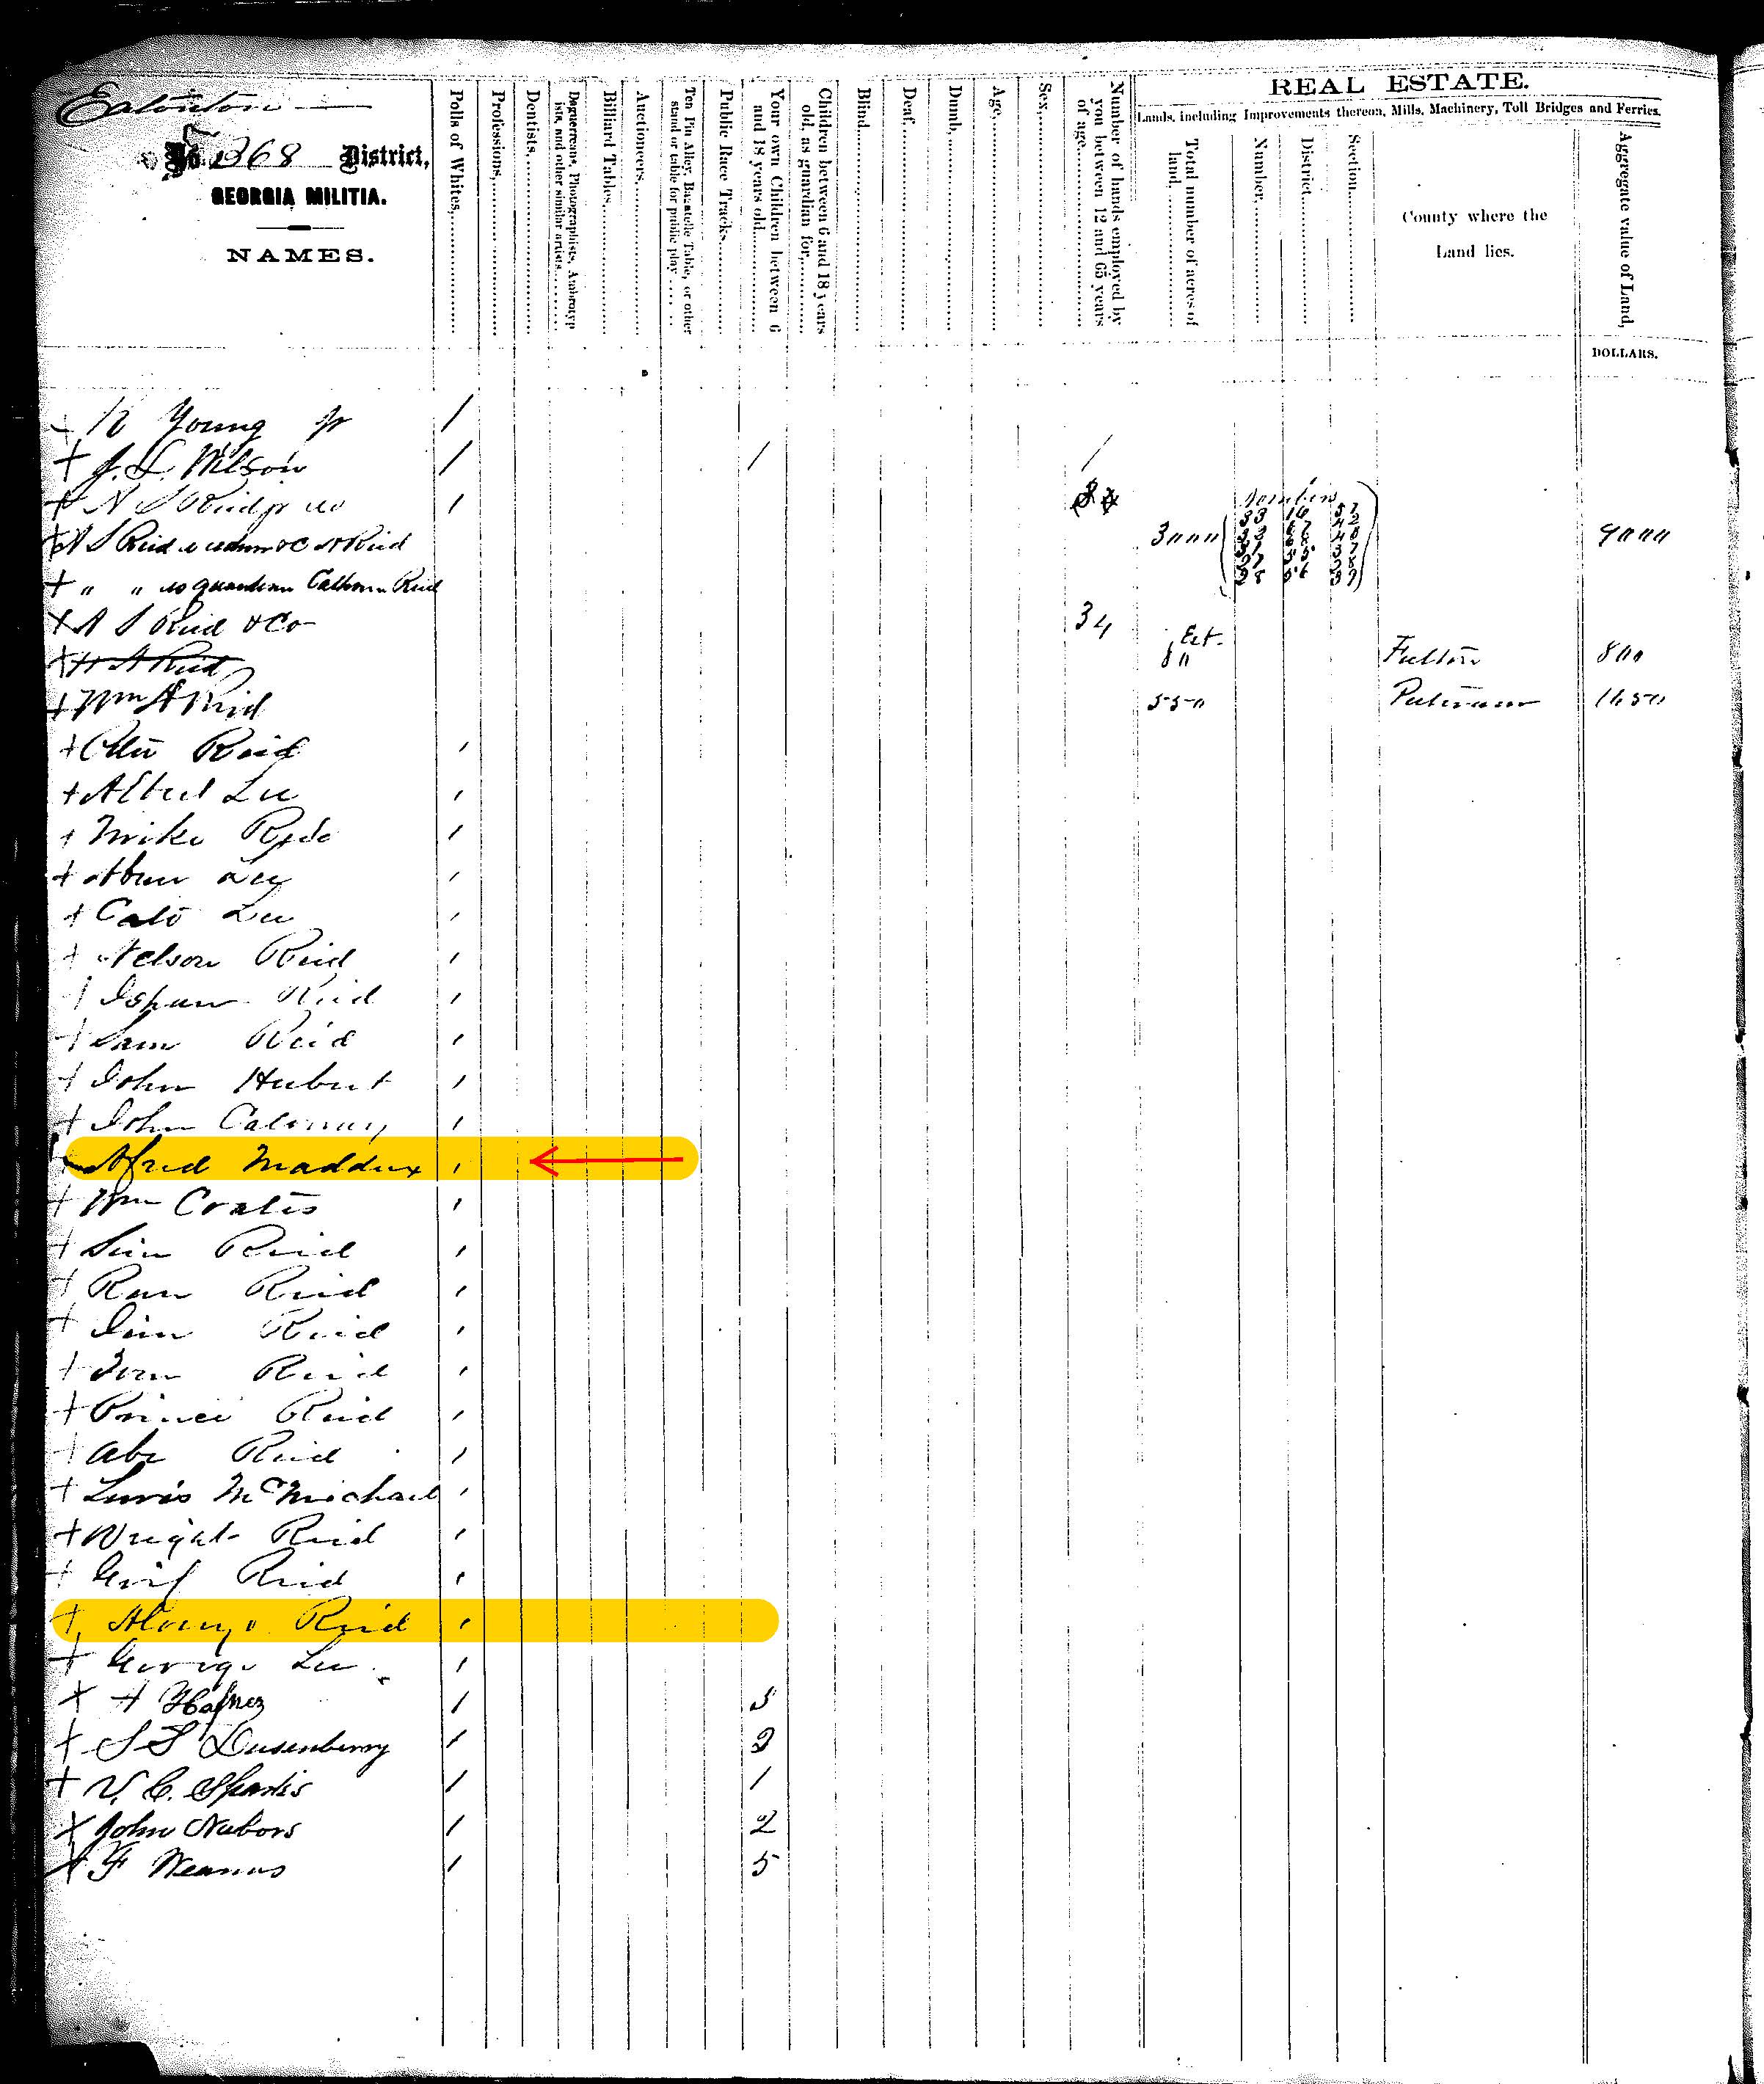 1867 Putnam County, Alfred Maddox & Henry Reid